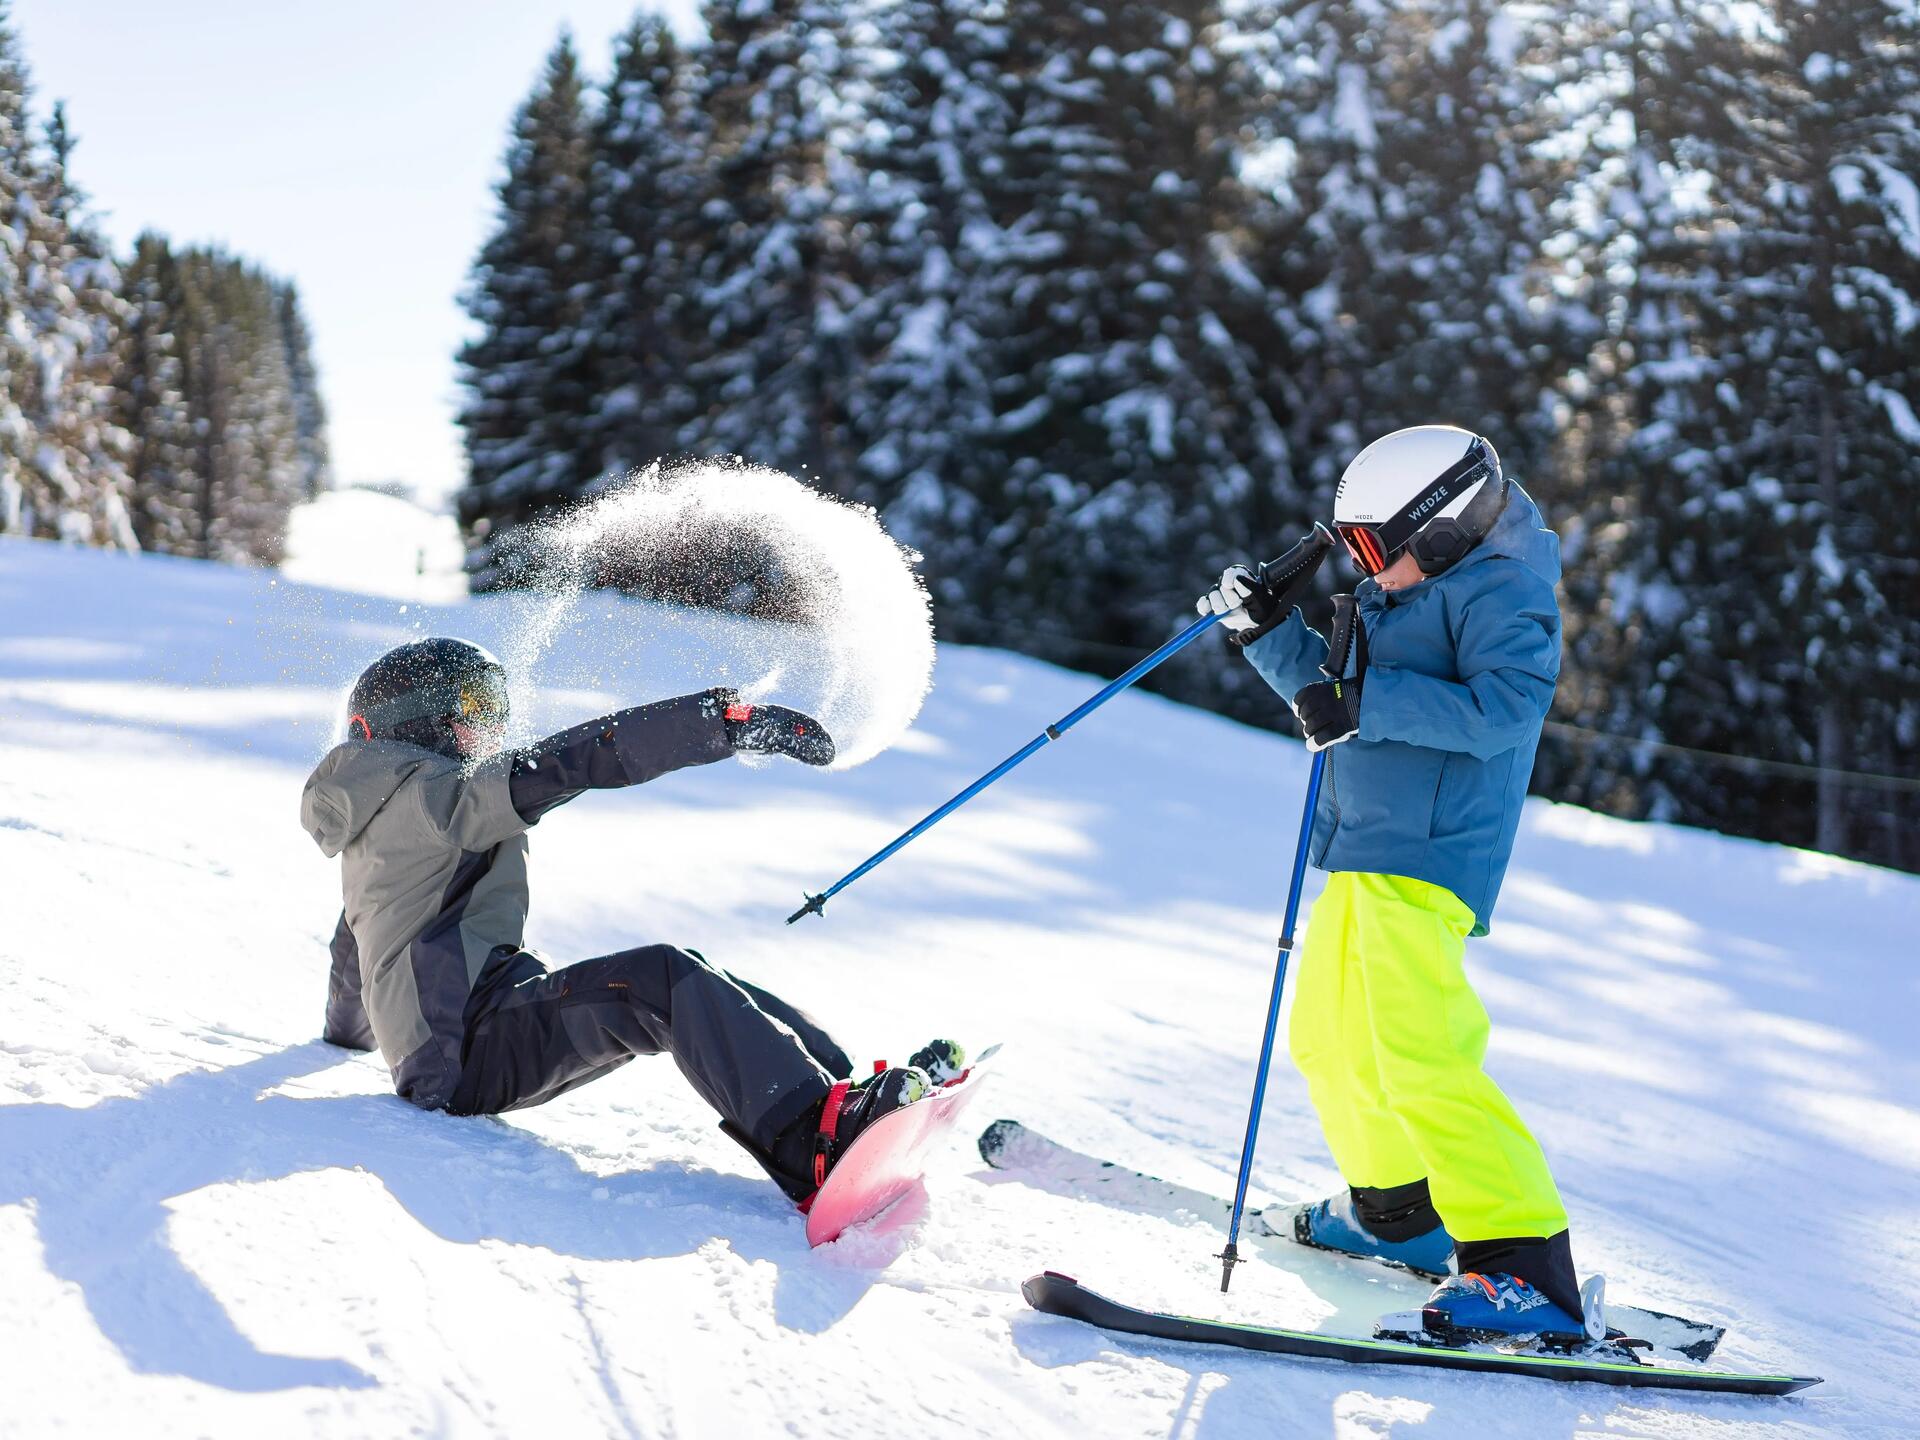 Liste des choses à emporter pour un voyage de ski : tous les articles  essentiels de ski dont vous aurez besoin!, Thule